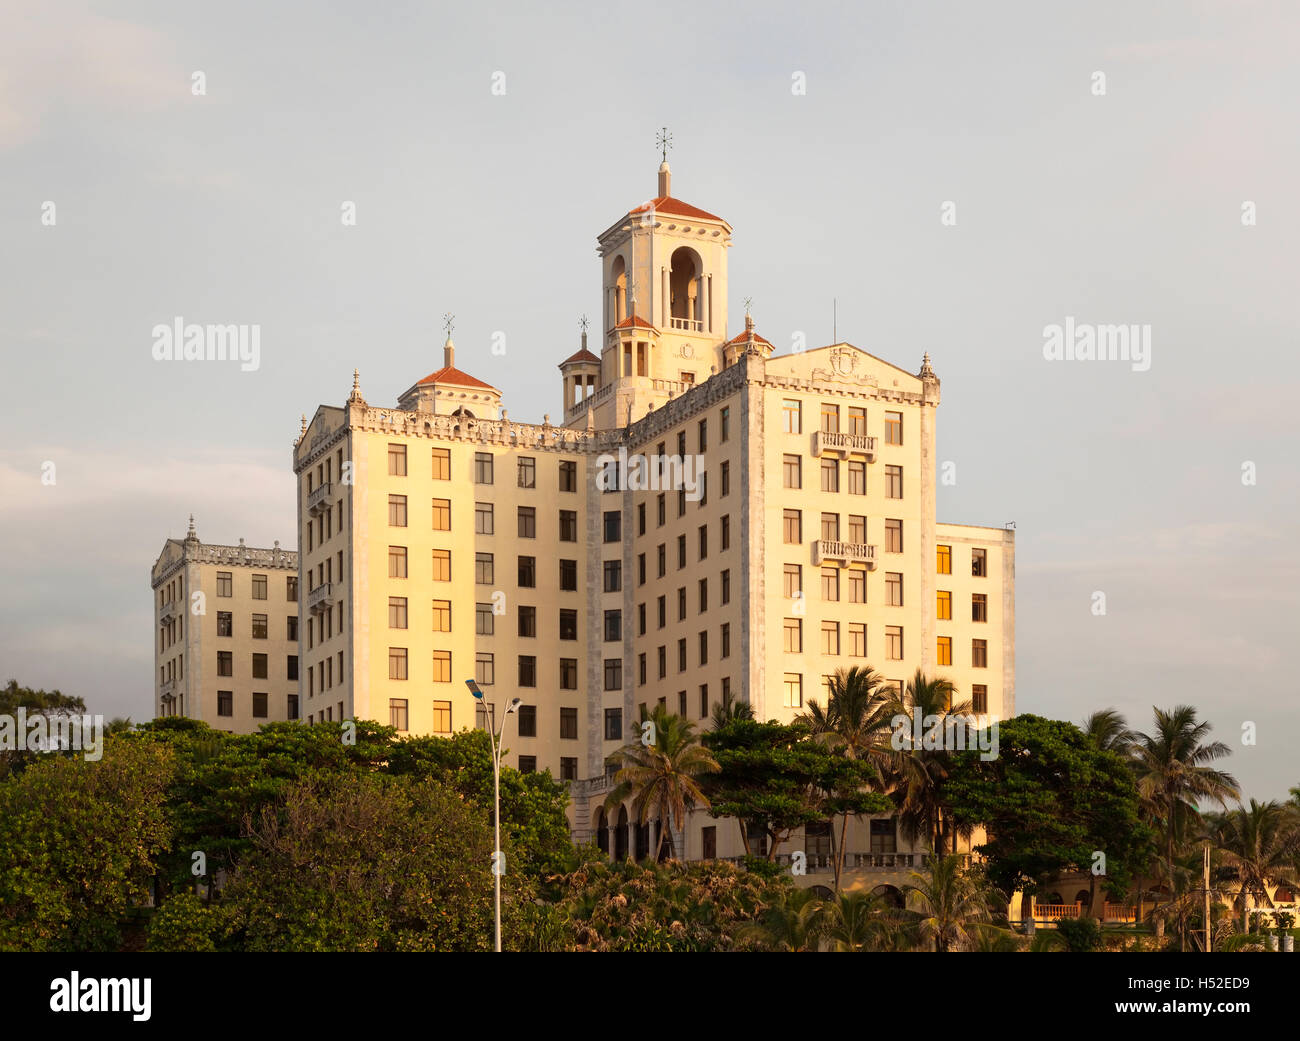 The Hotel Nacional de Cuba on top of Taganana Hill along The Malecón (Avenida de Maceo) in Vedado, Havana, Cuba. Stock Photo